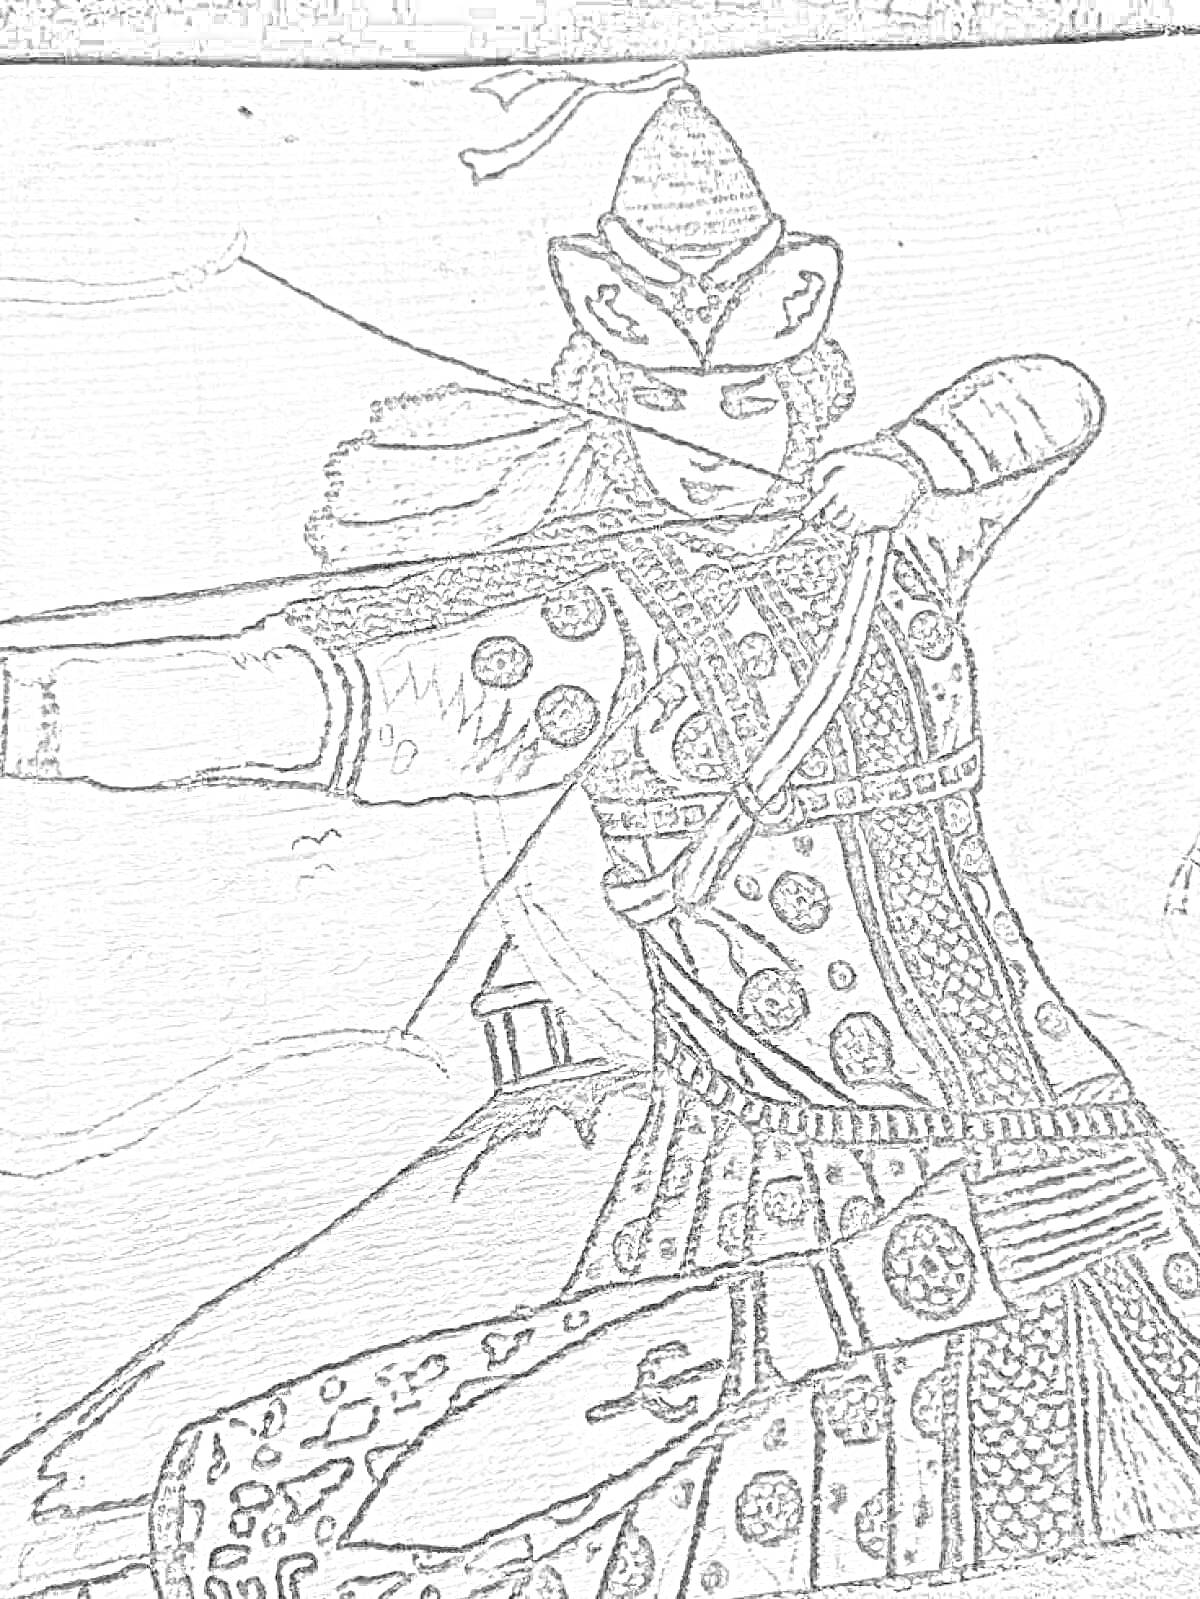 Томирис, женщина-воин, стреляющая из лука, в традиционном костюме с металлическими элементами и узорами, на фоне палатки и гор